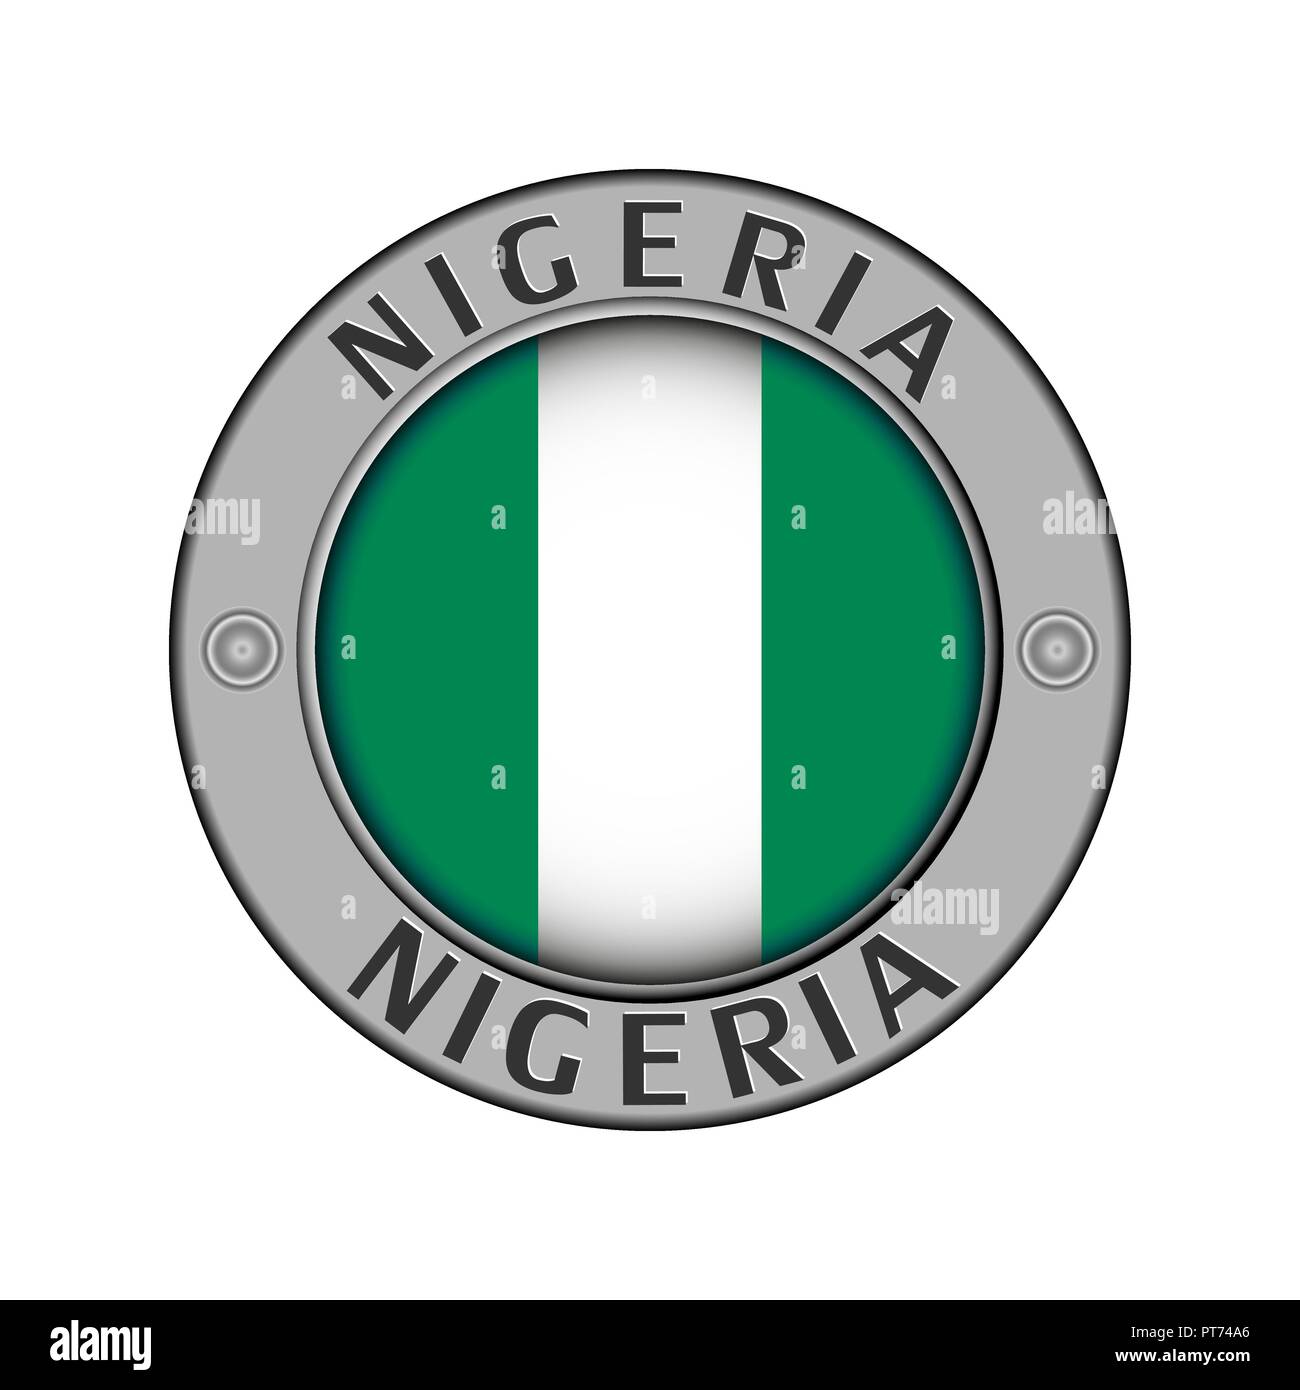 Rotondo di metallo medaglione con il nome del paese Nigeria e un indicatore rotondo nel centro Illustrazione Vettoriale